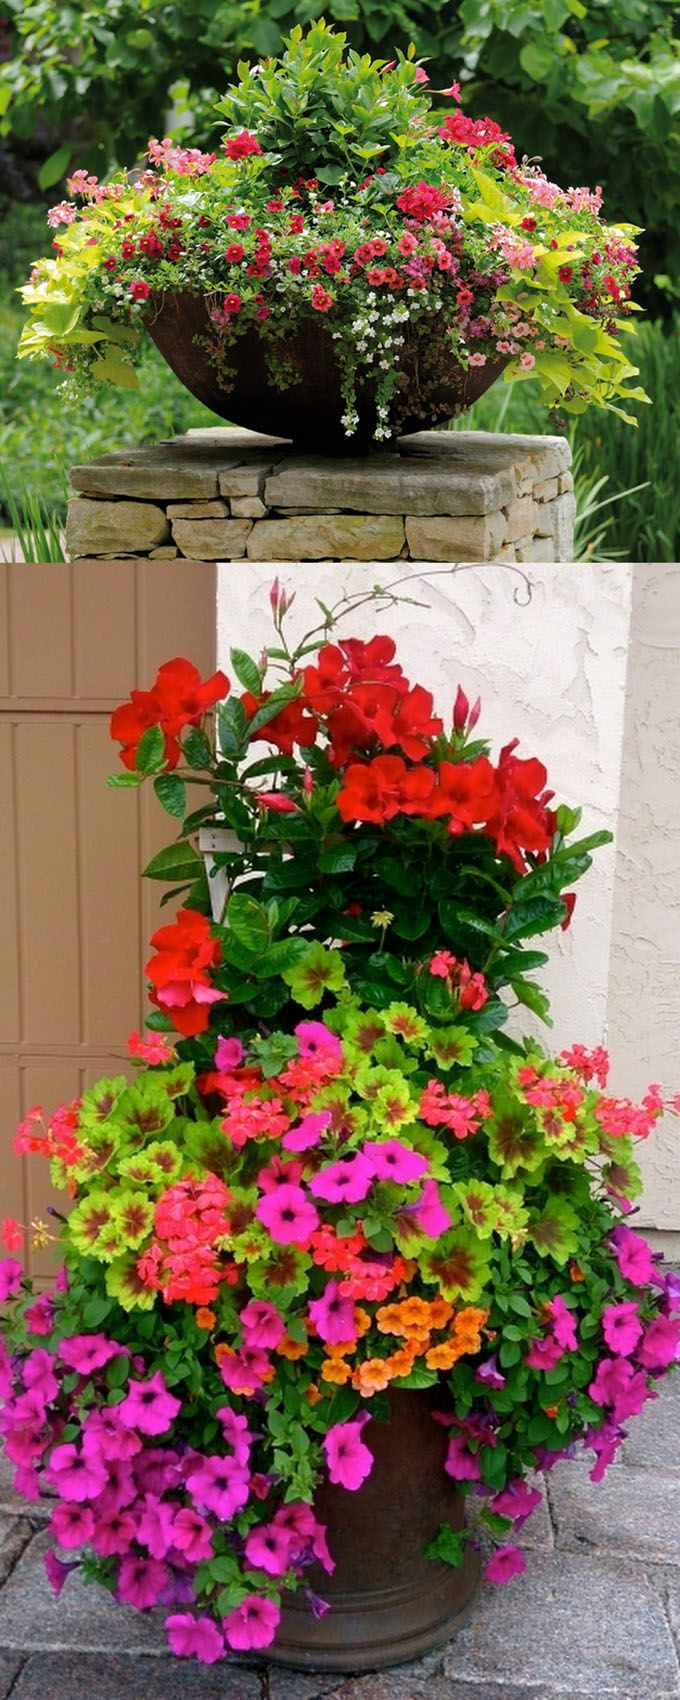 Best ideas about Container Flower Garden Ideas
. Save or Pin Best 25 Container gardening ideas on Pinterest Now.